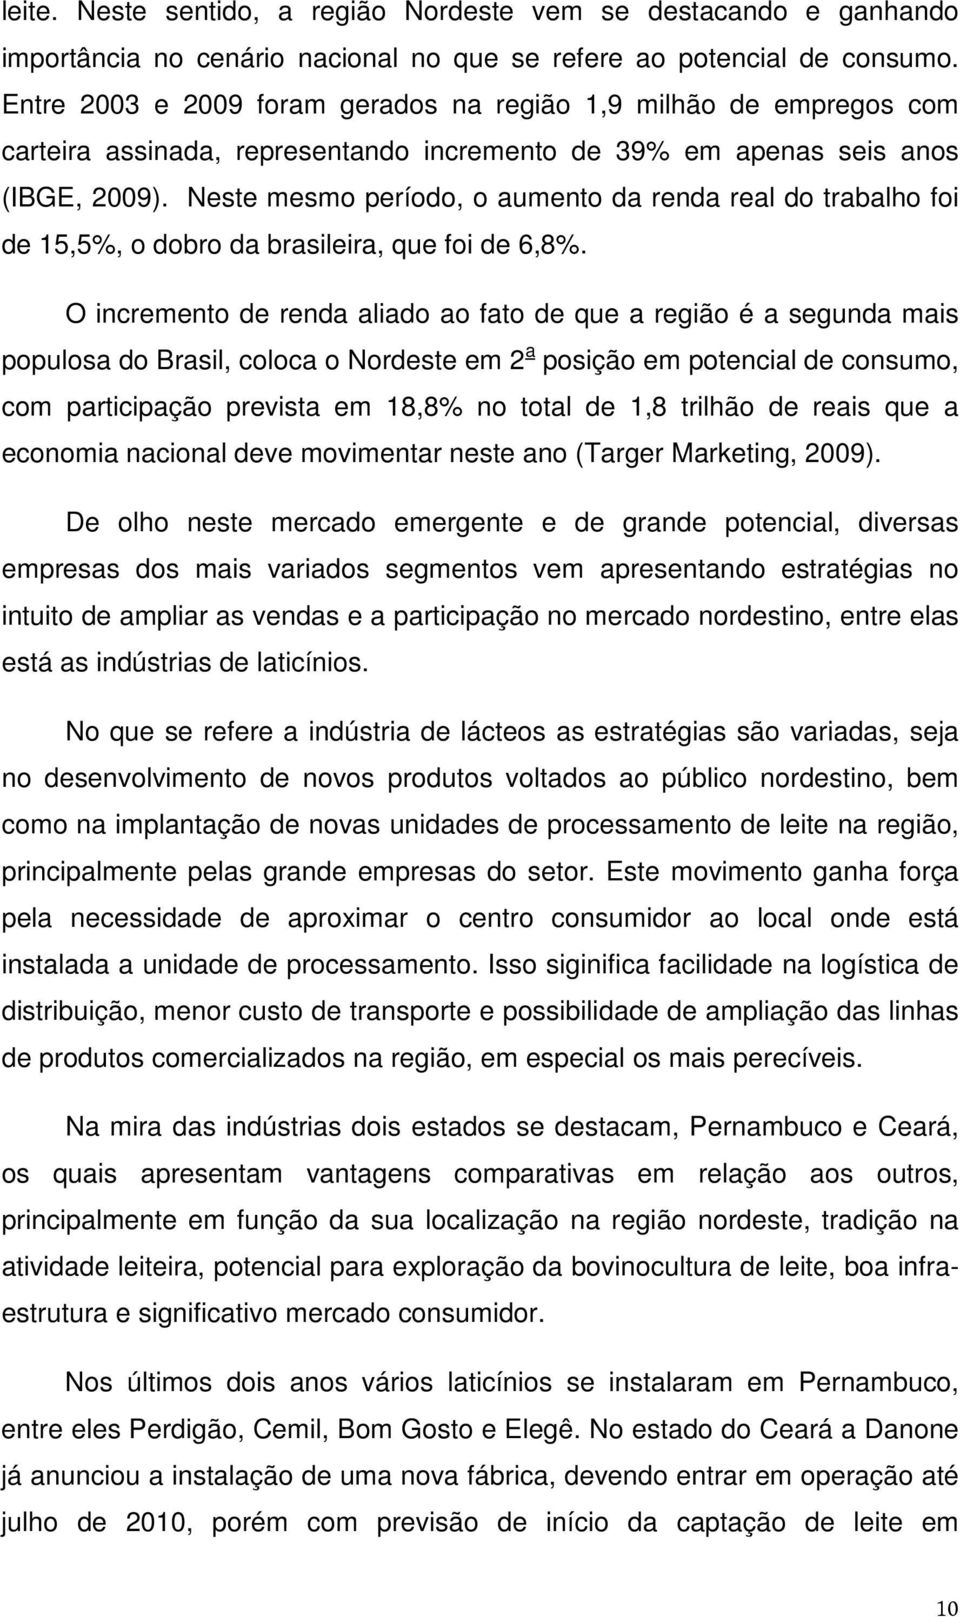 Neste mesmo período, o aumento da renda real do trabalho foi de 15,5%, o dobro da brasileira, que foi de 6,8%.